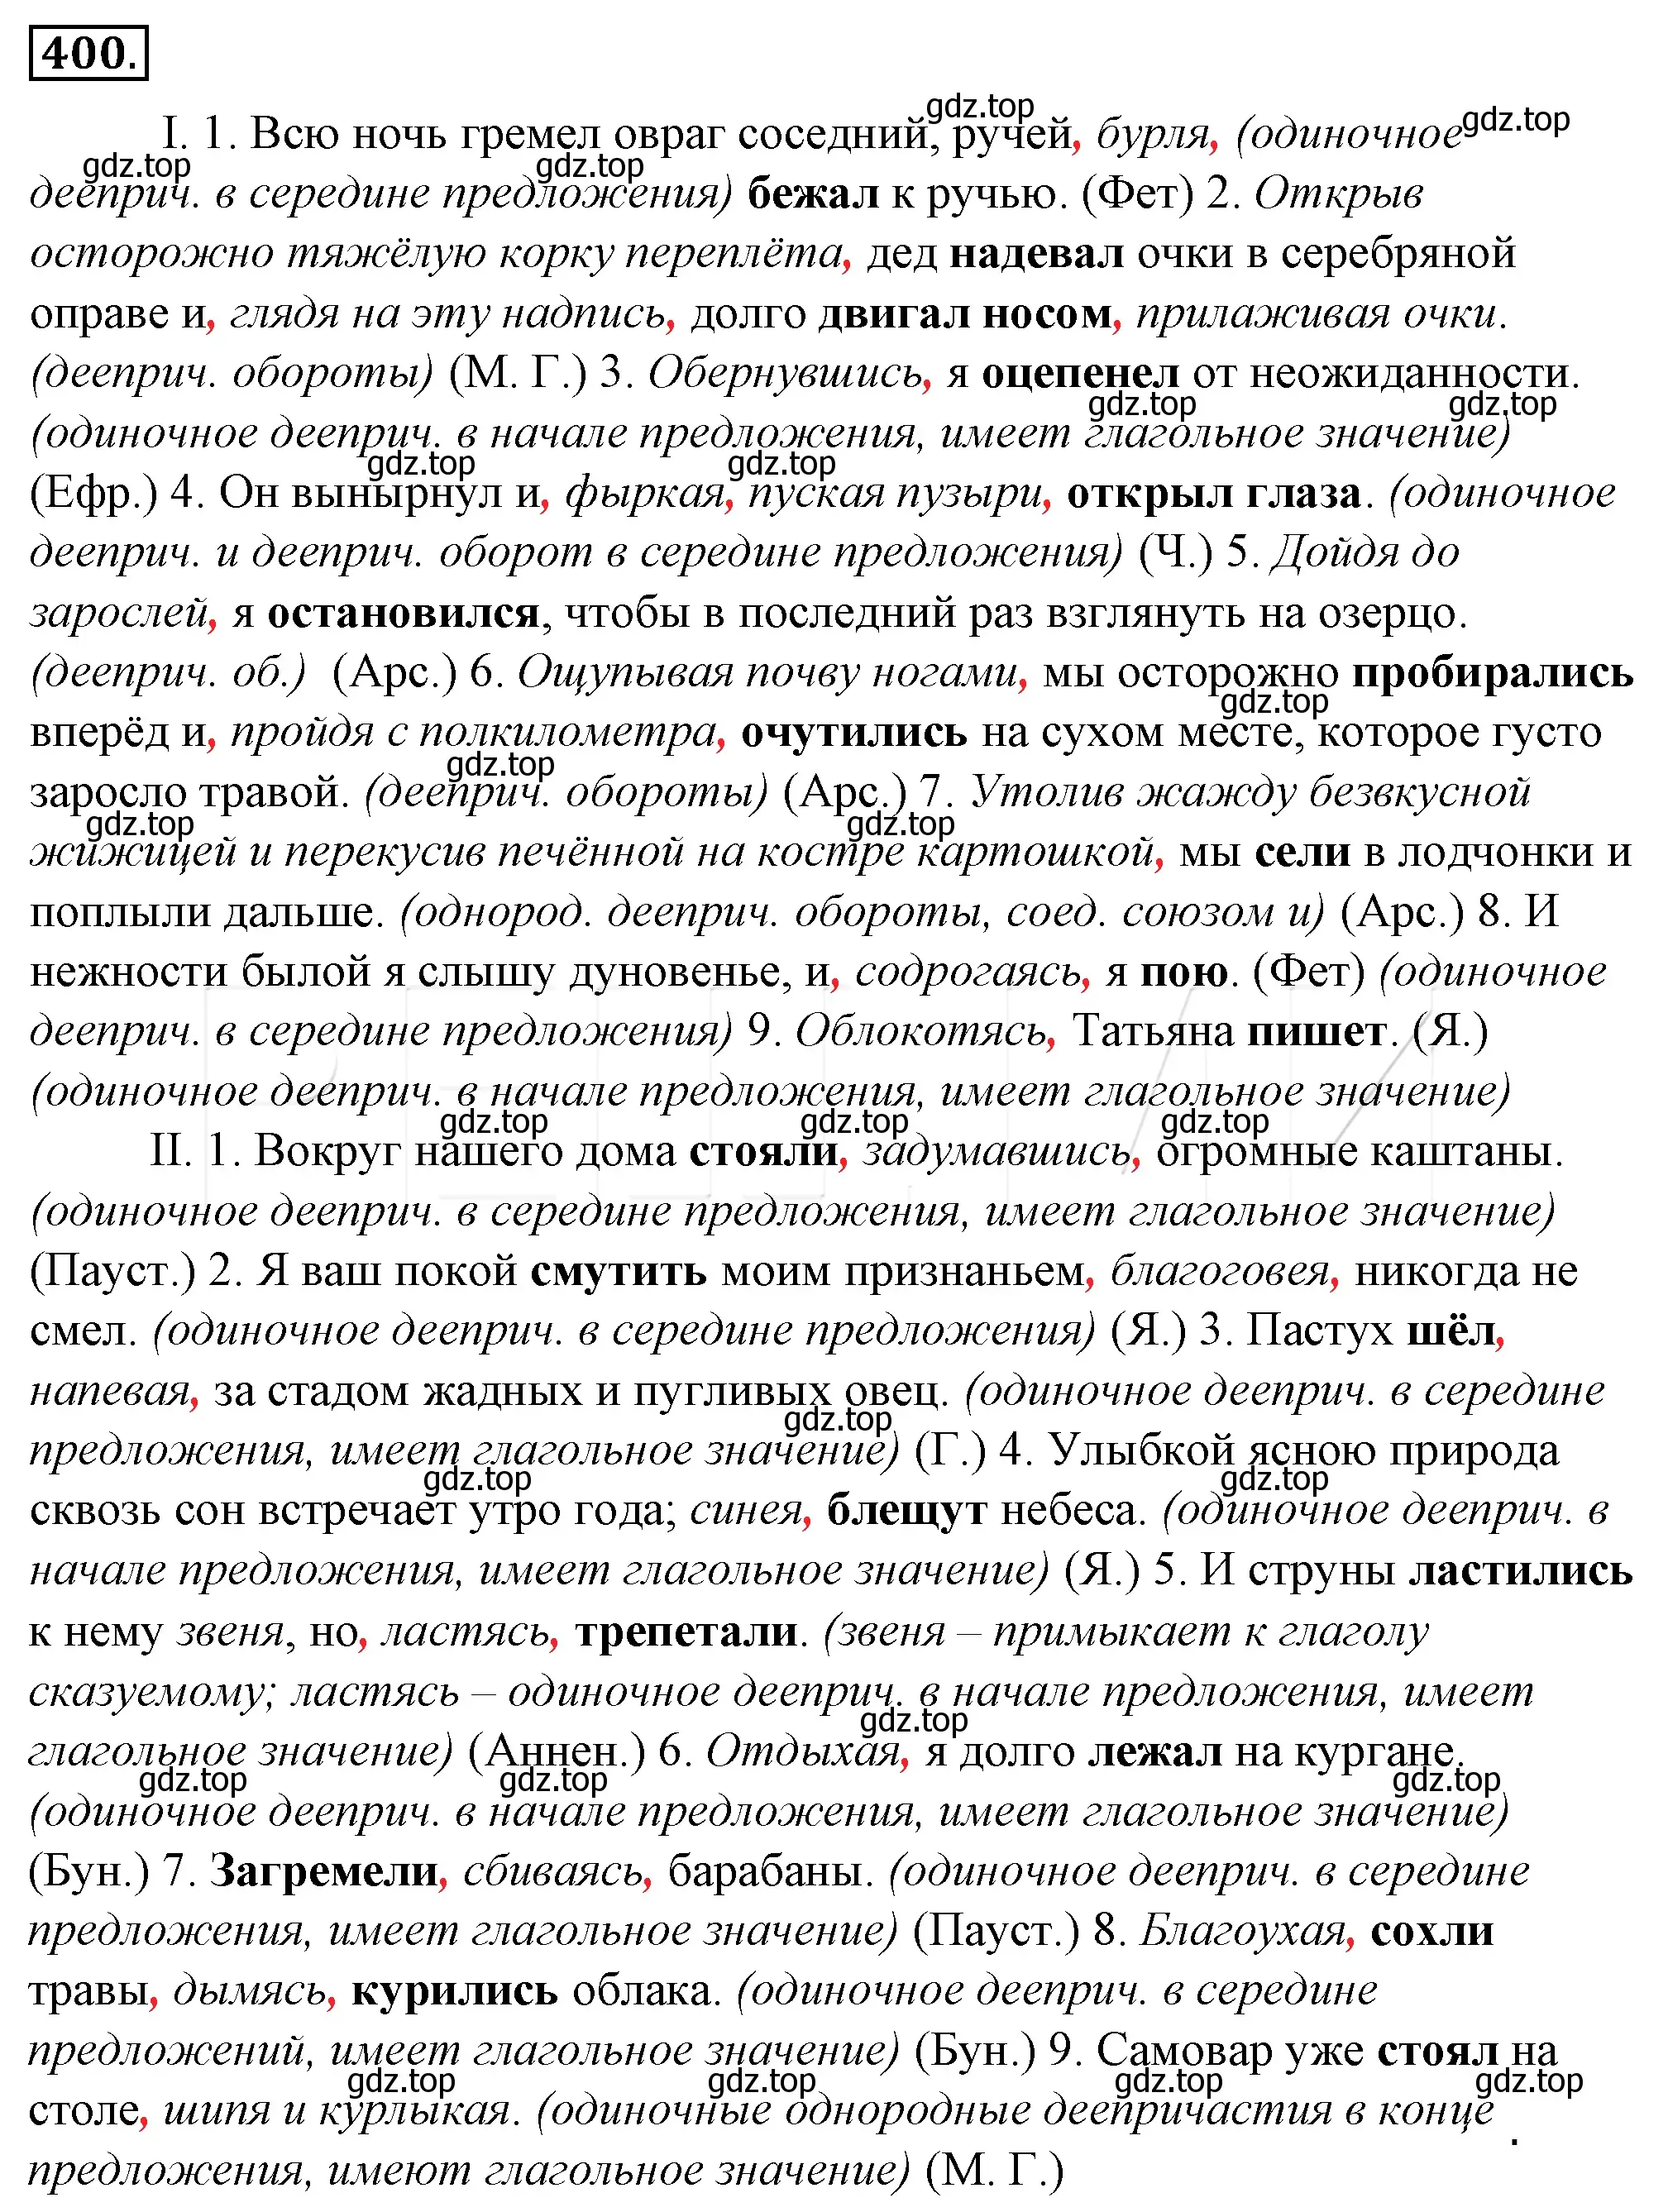 Решение 4. номер 65 (страница 89) гдз по русскому языку 10-11 класс Гольцова, Шамшин, учебник 2 часть